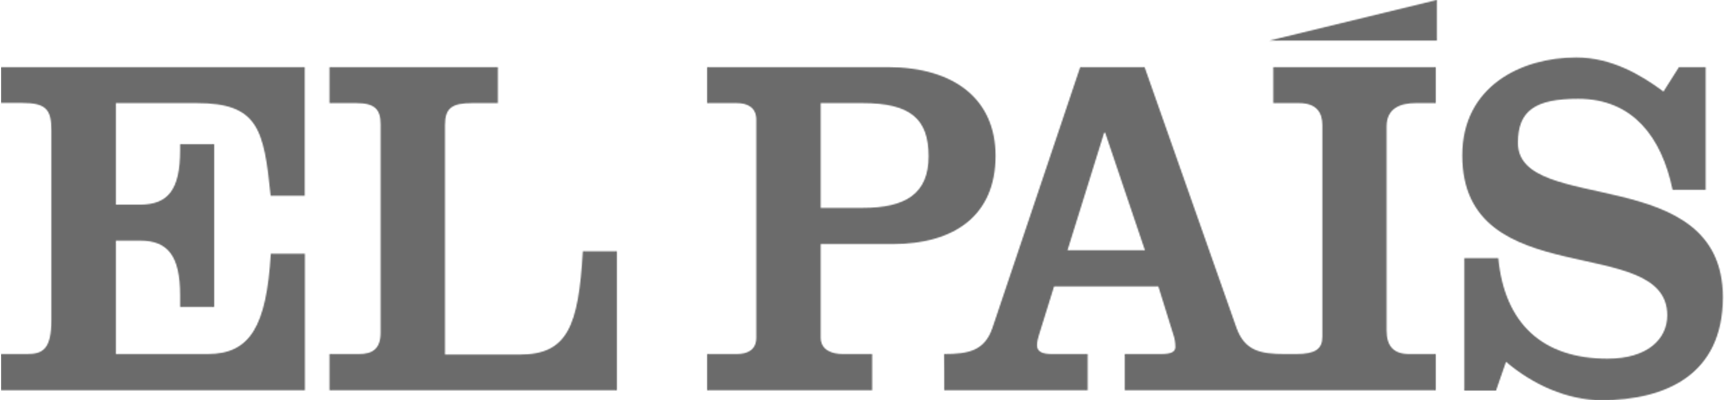 Logo El País